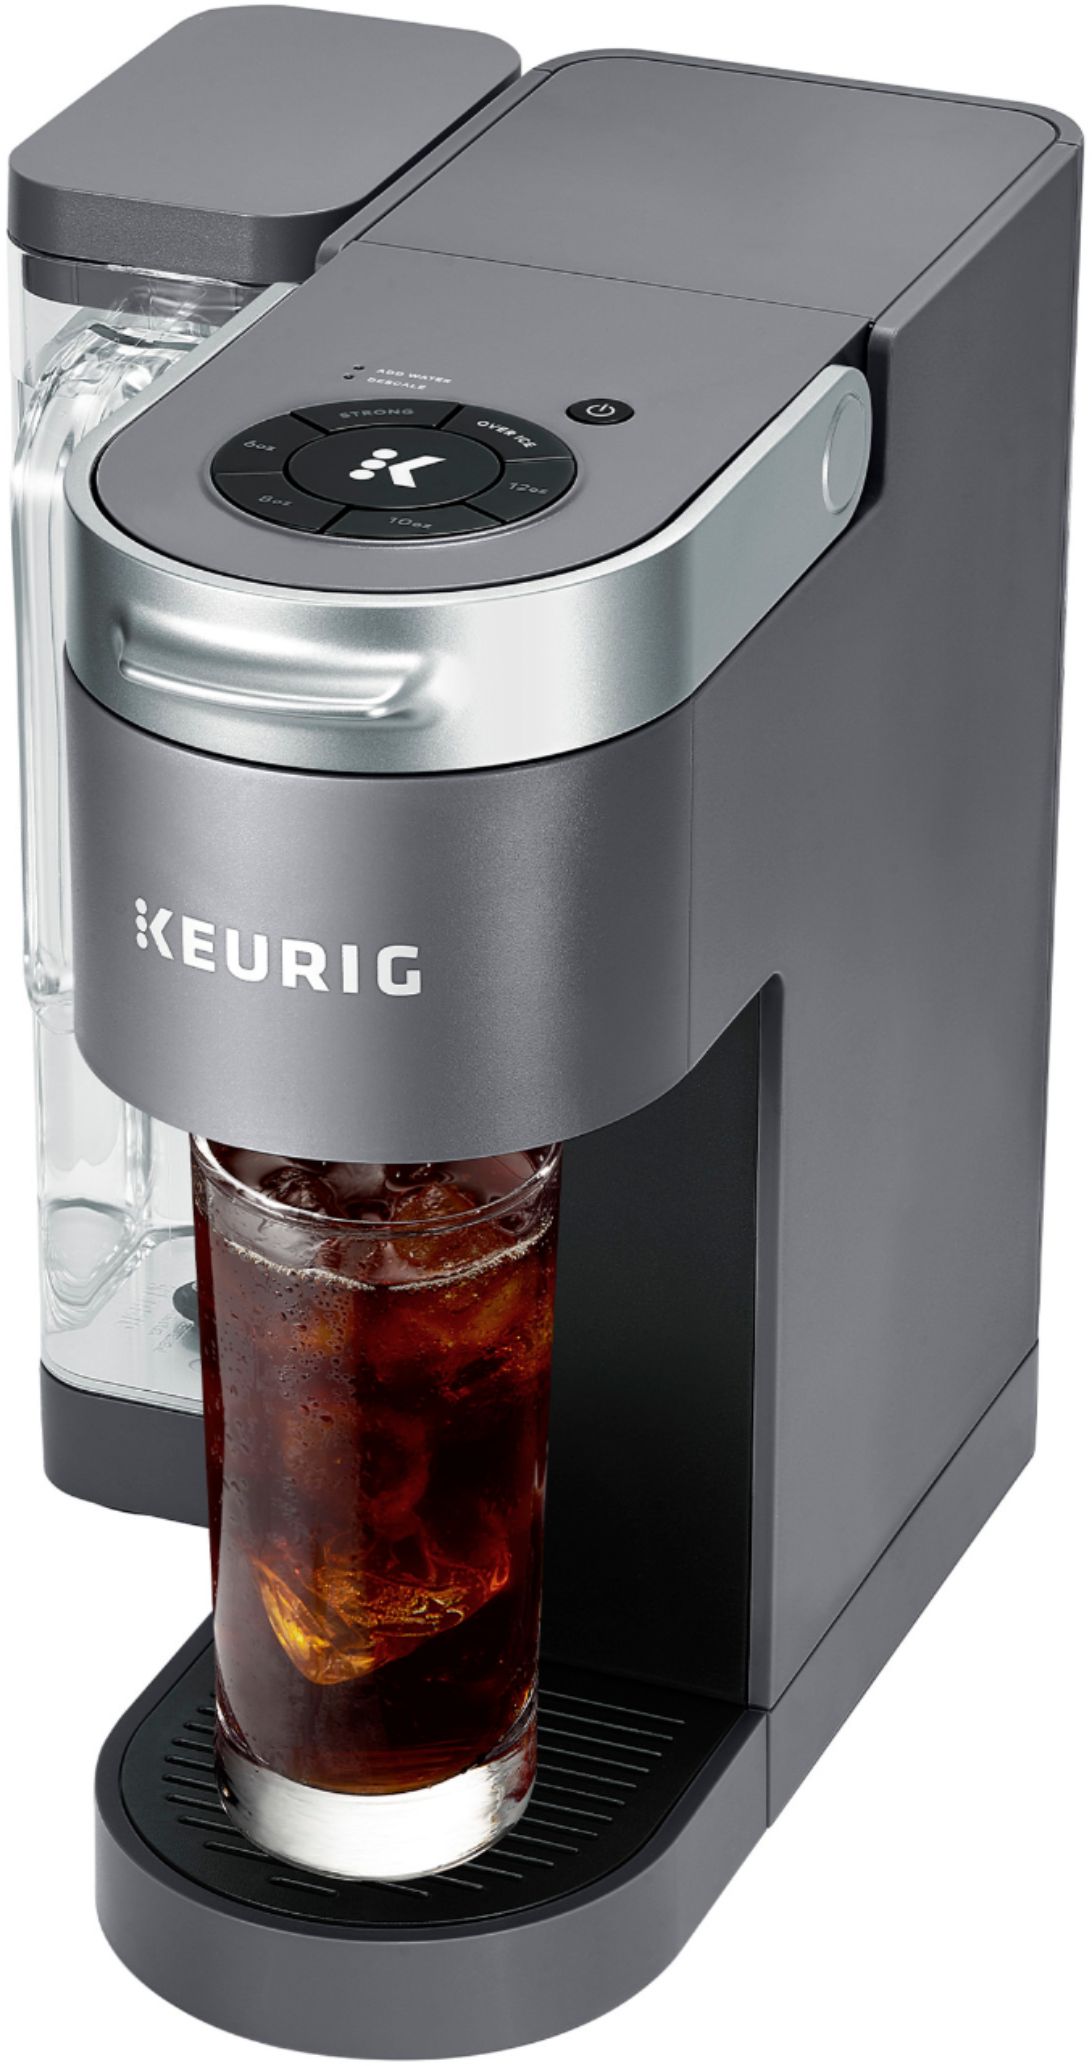 Angle View: Keurig - K Supreme Single Serve K-Cup Pod Coffee Maker - Gray